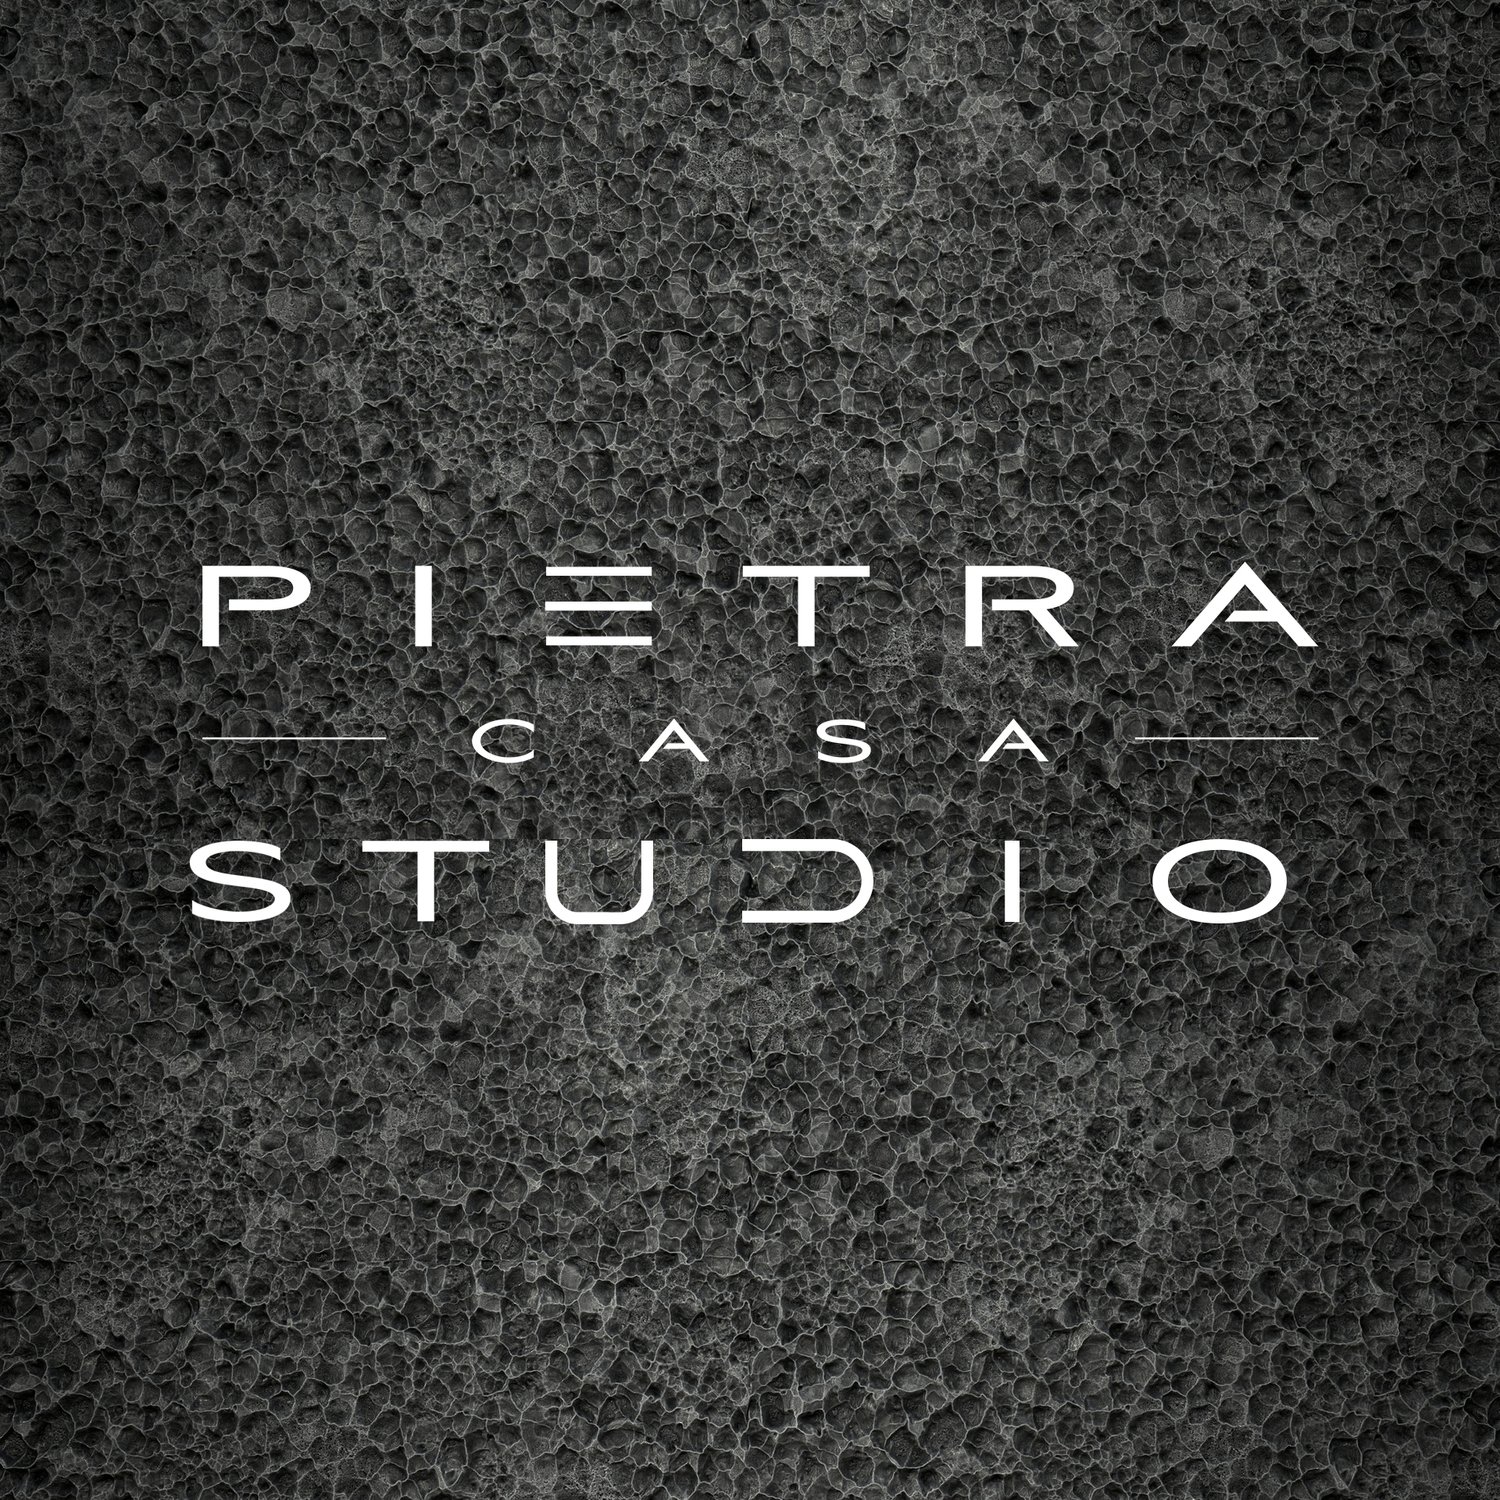 PIETRA CASA STUDIO